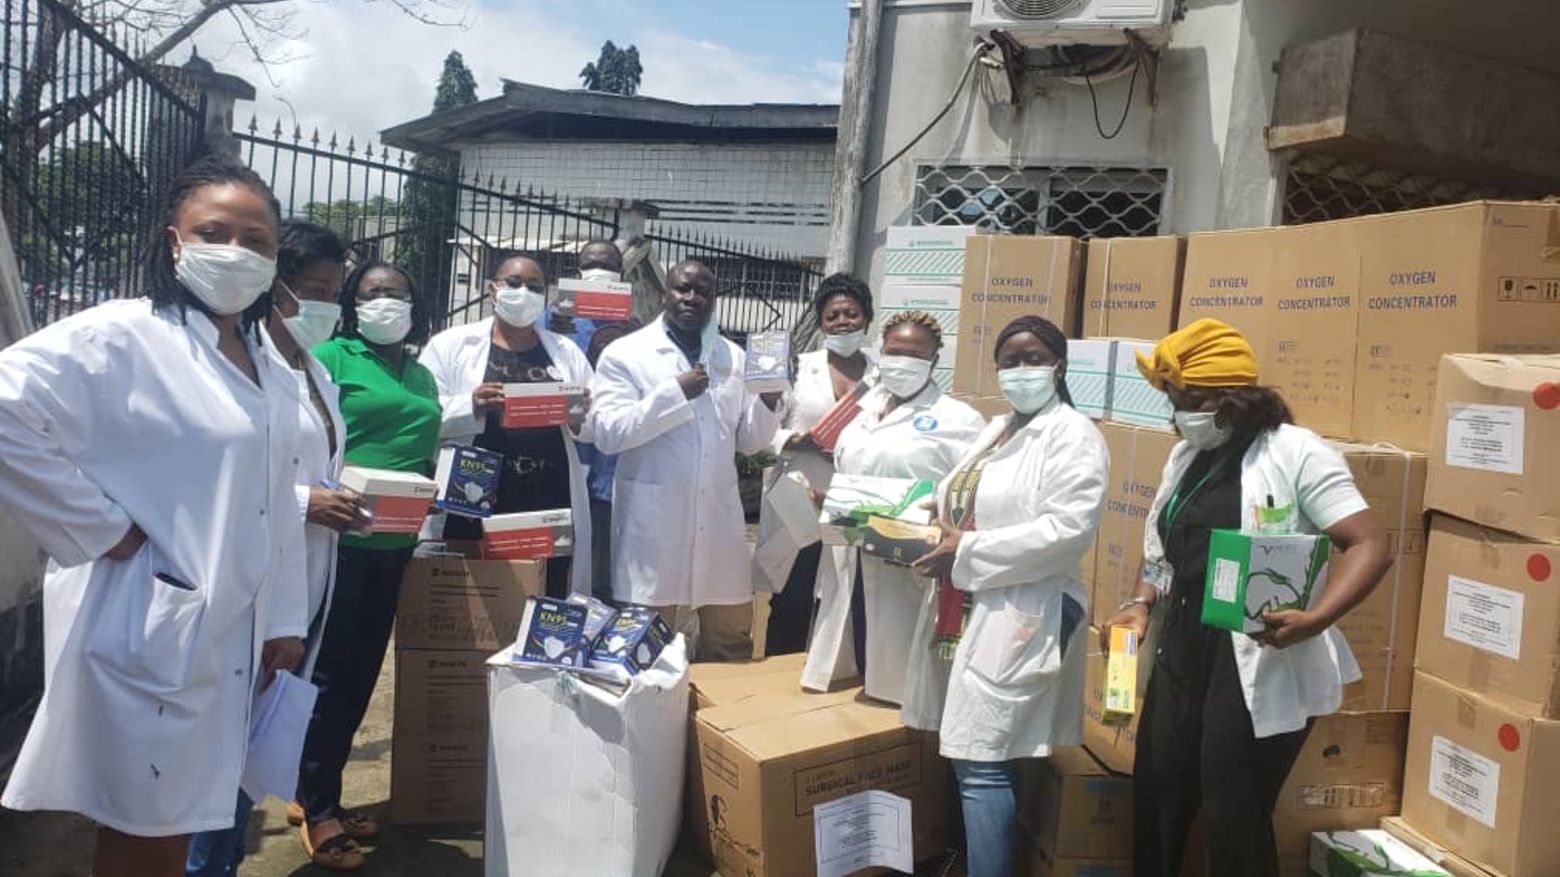 Die erste Lieferung für die Cameroon Babtist Convention Health Services (CBCHS) ist eingetroffen